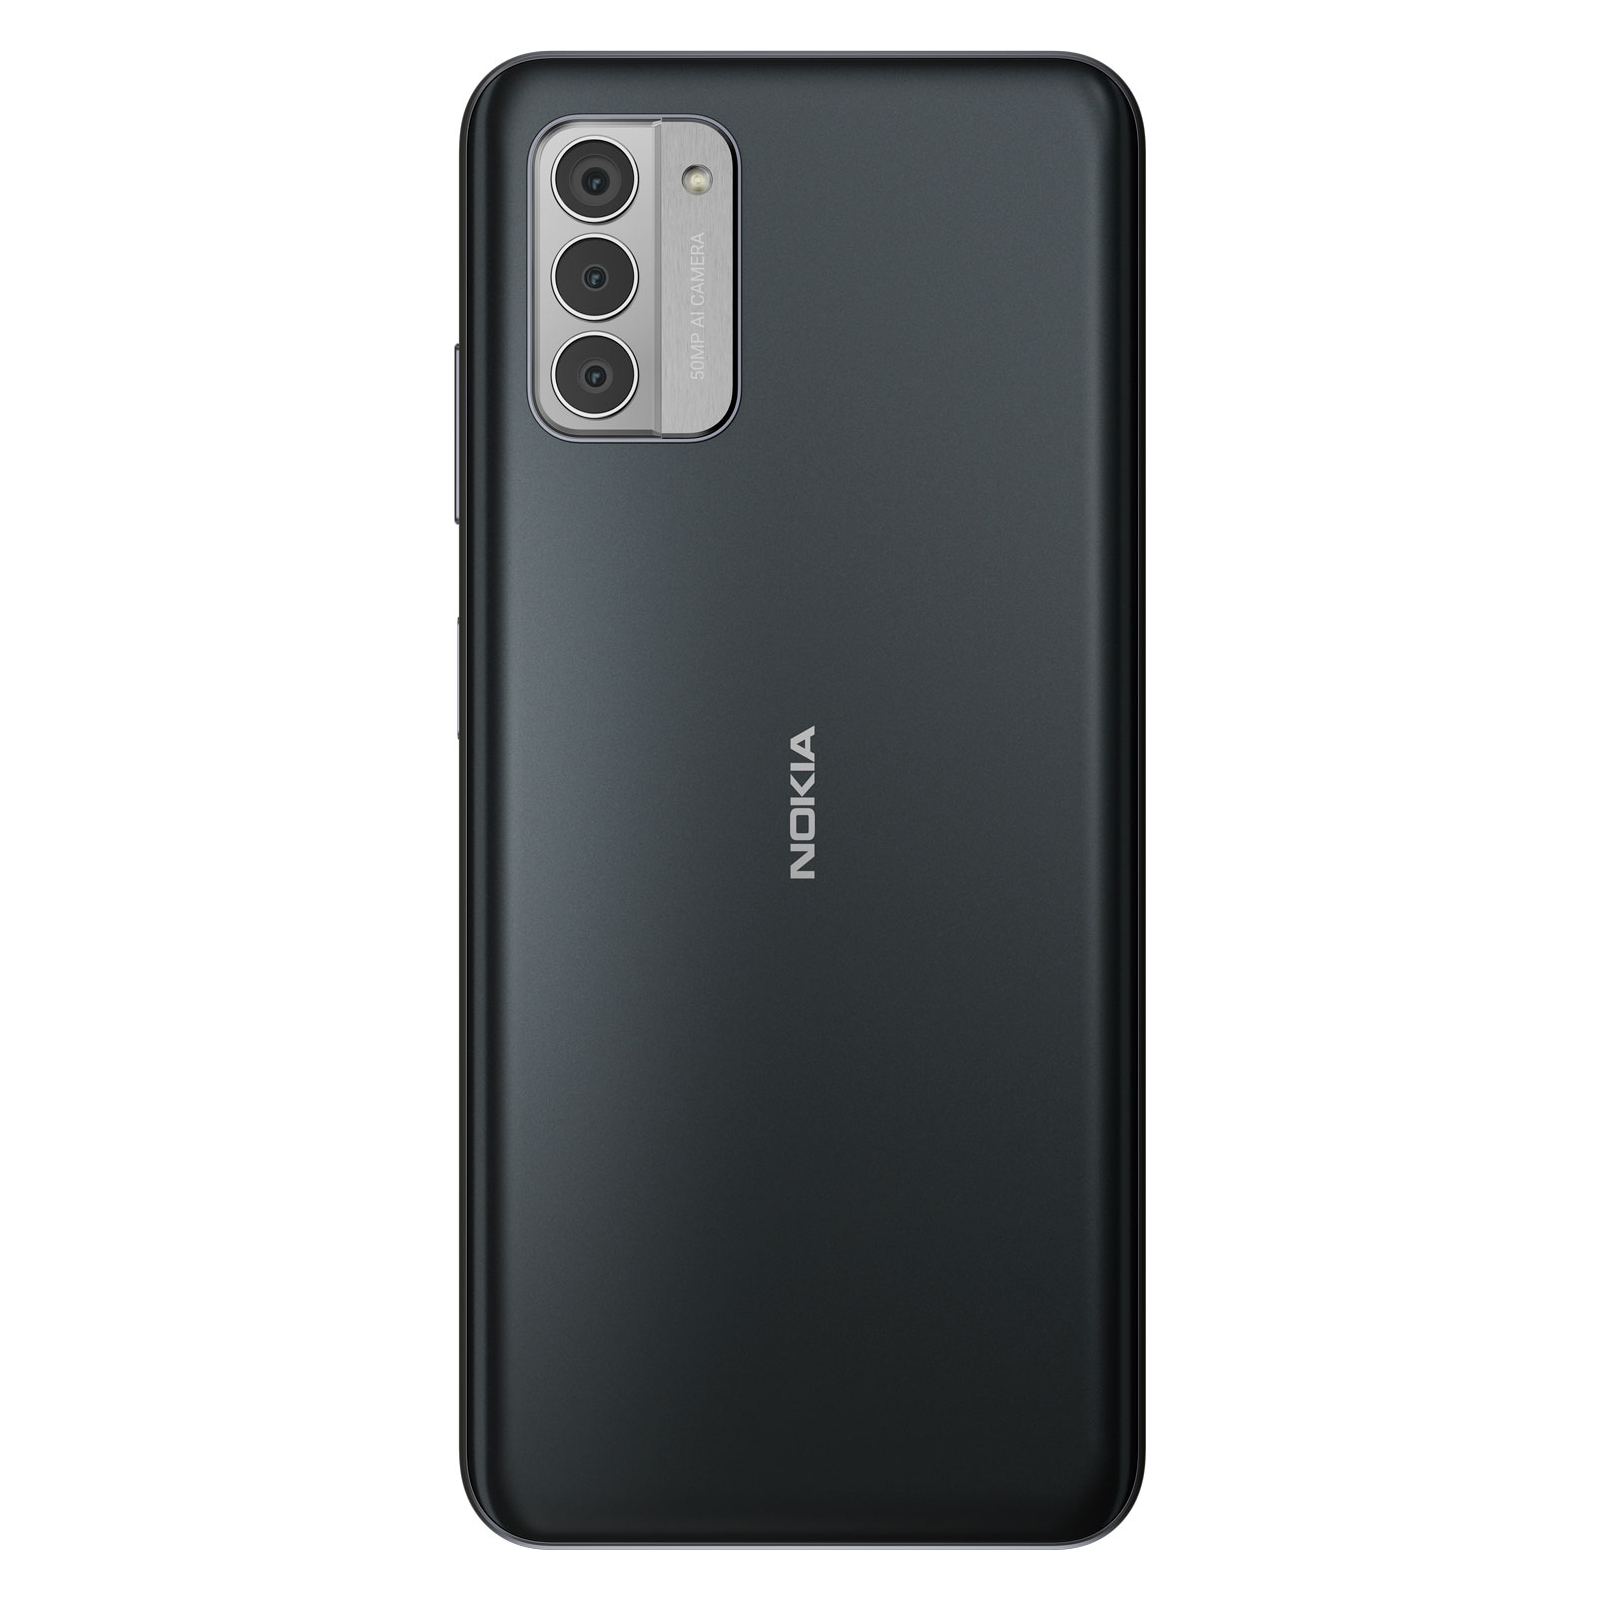 Мобільний телефон Nokia G42 6/128Gb Purple зображення 2